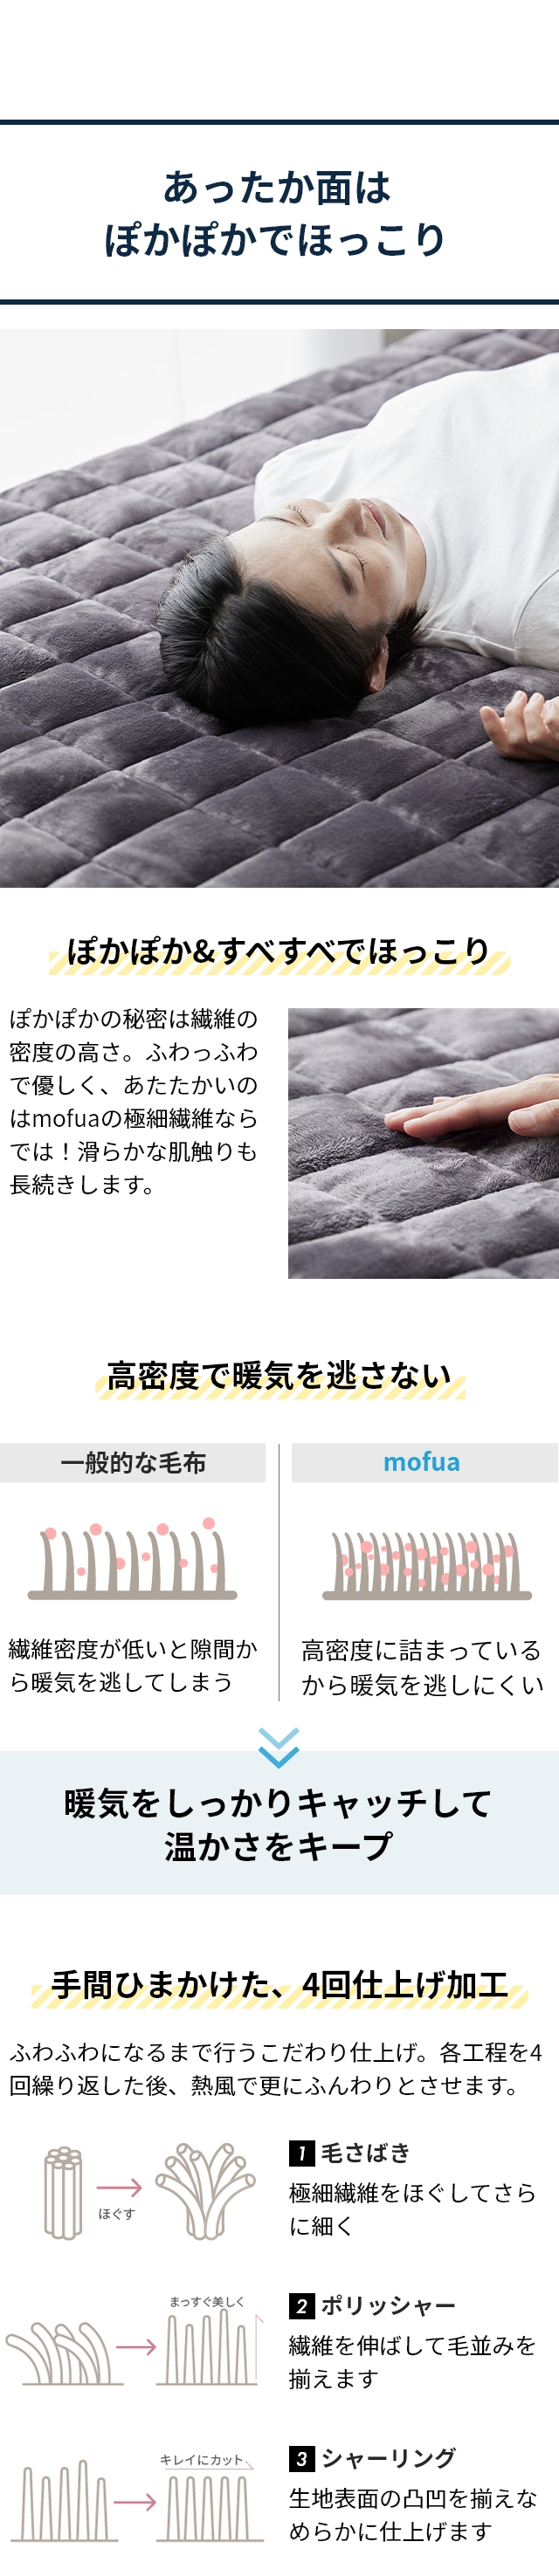 mofua (モフア) プレミアムマイクロファイバー 中綿増量ボリューム敷きパッド リバーシブル D ダブル